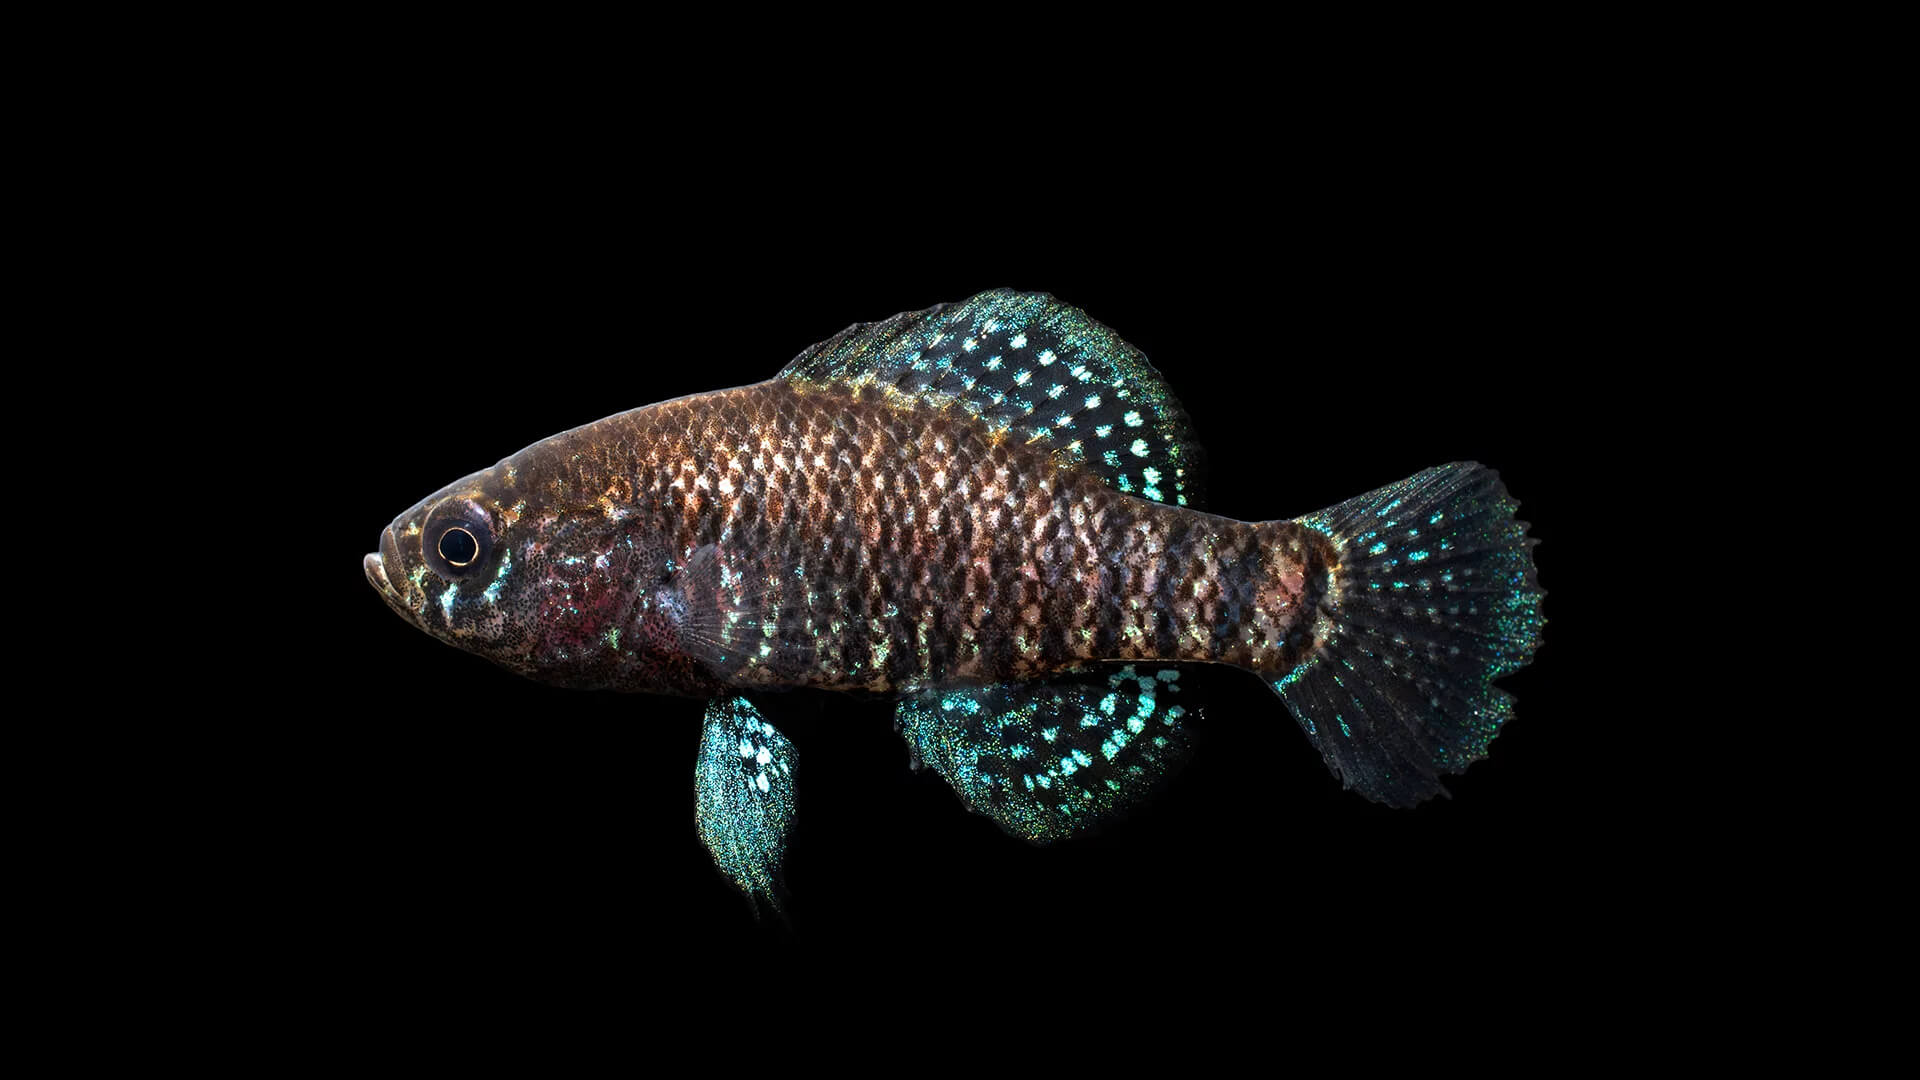 Image of a Carolina Pygmy Sunfish